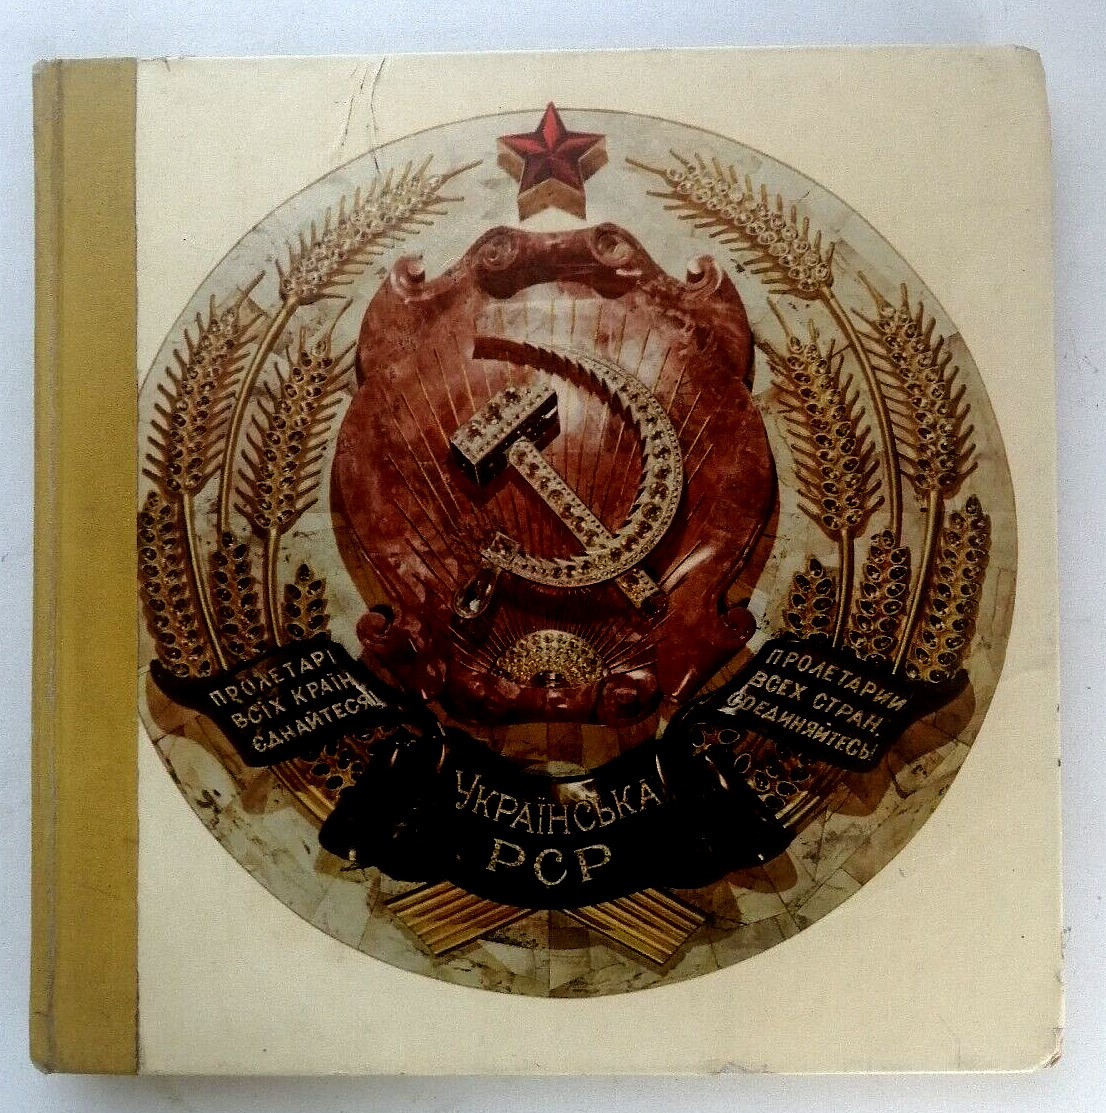 1970 Soviet Ukraine, book-photo album